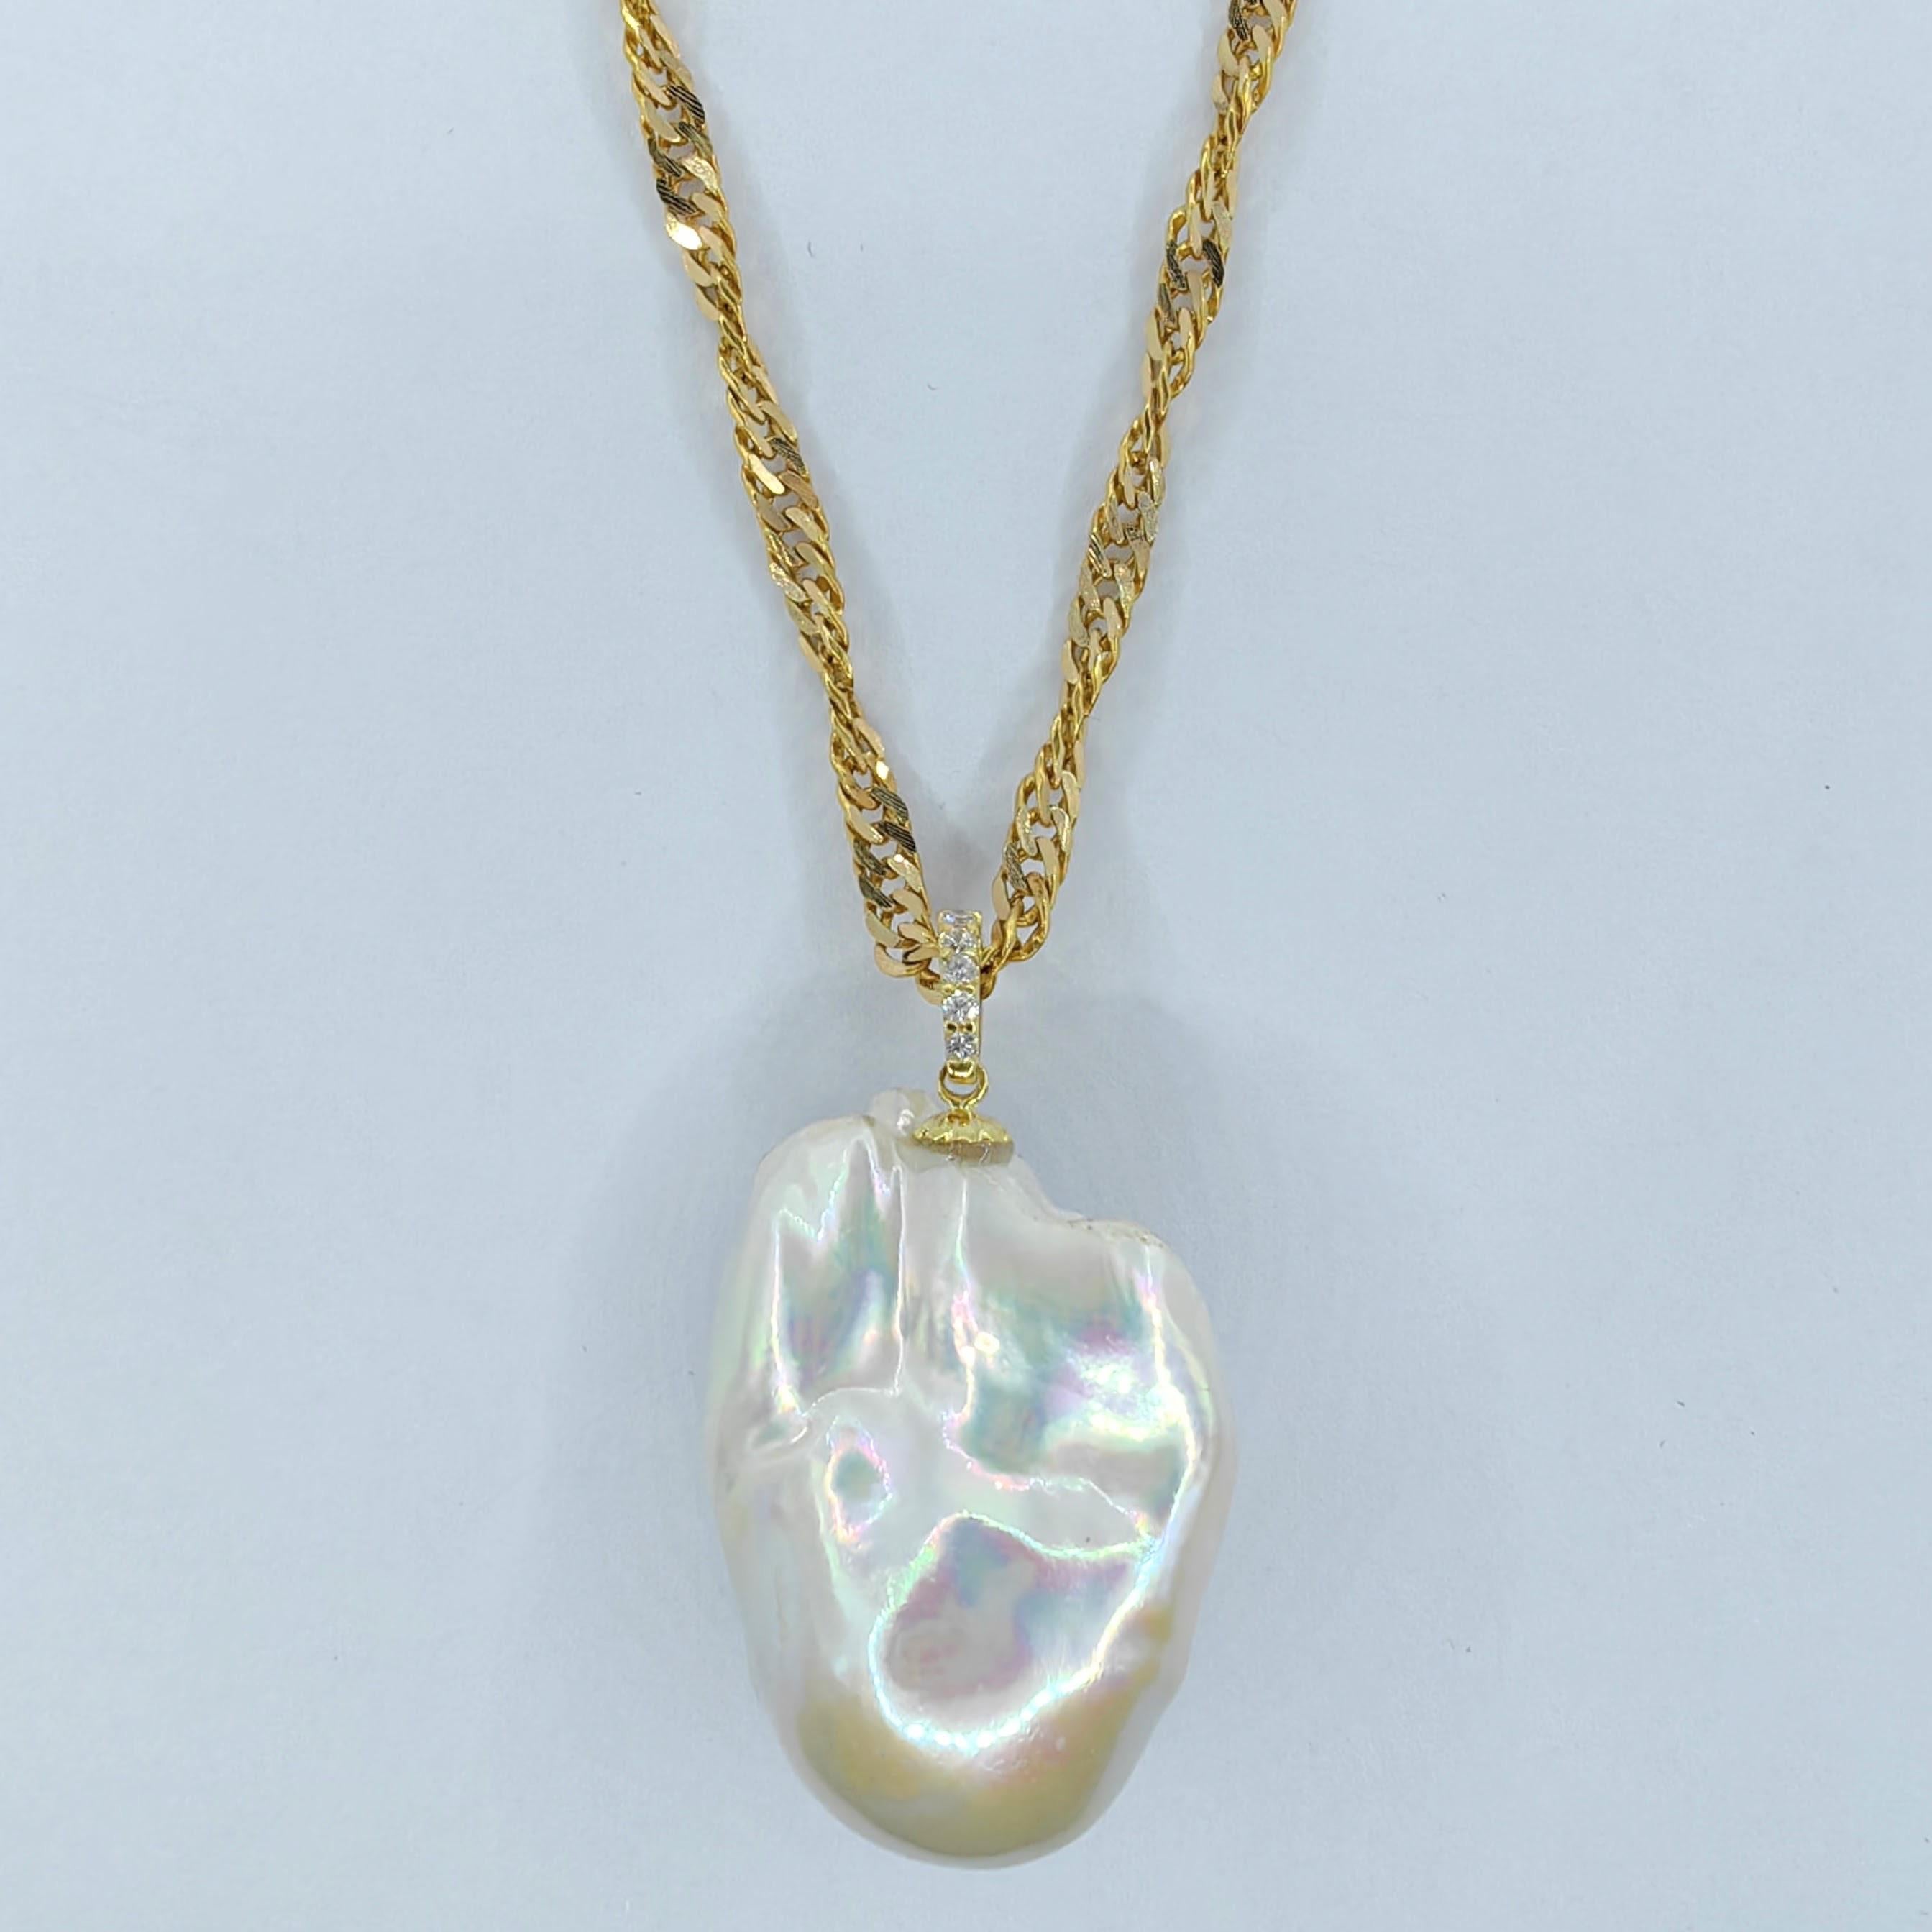 Brilliant Cut 49.24ct Iridescent Baroque Pearl Diamond 18K Pendant & 22K Chain in Yellow Gold For Sale